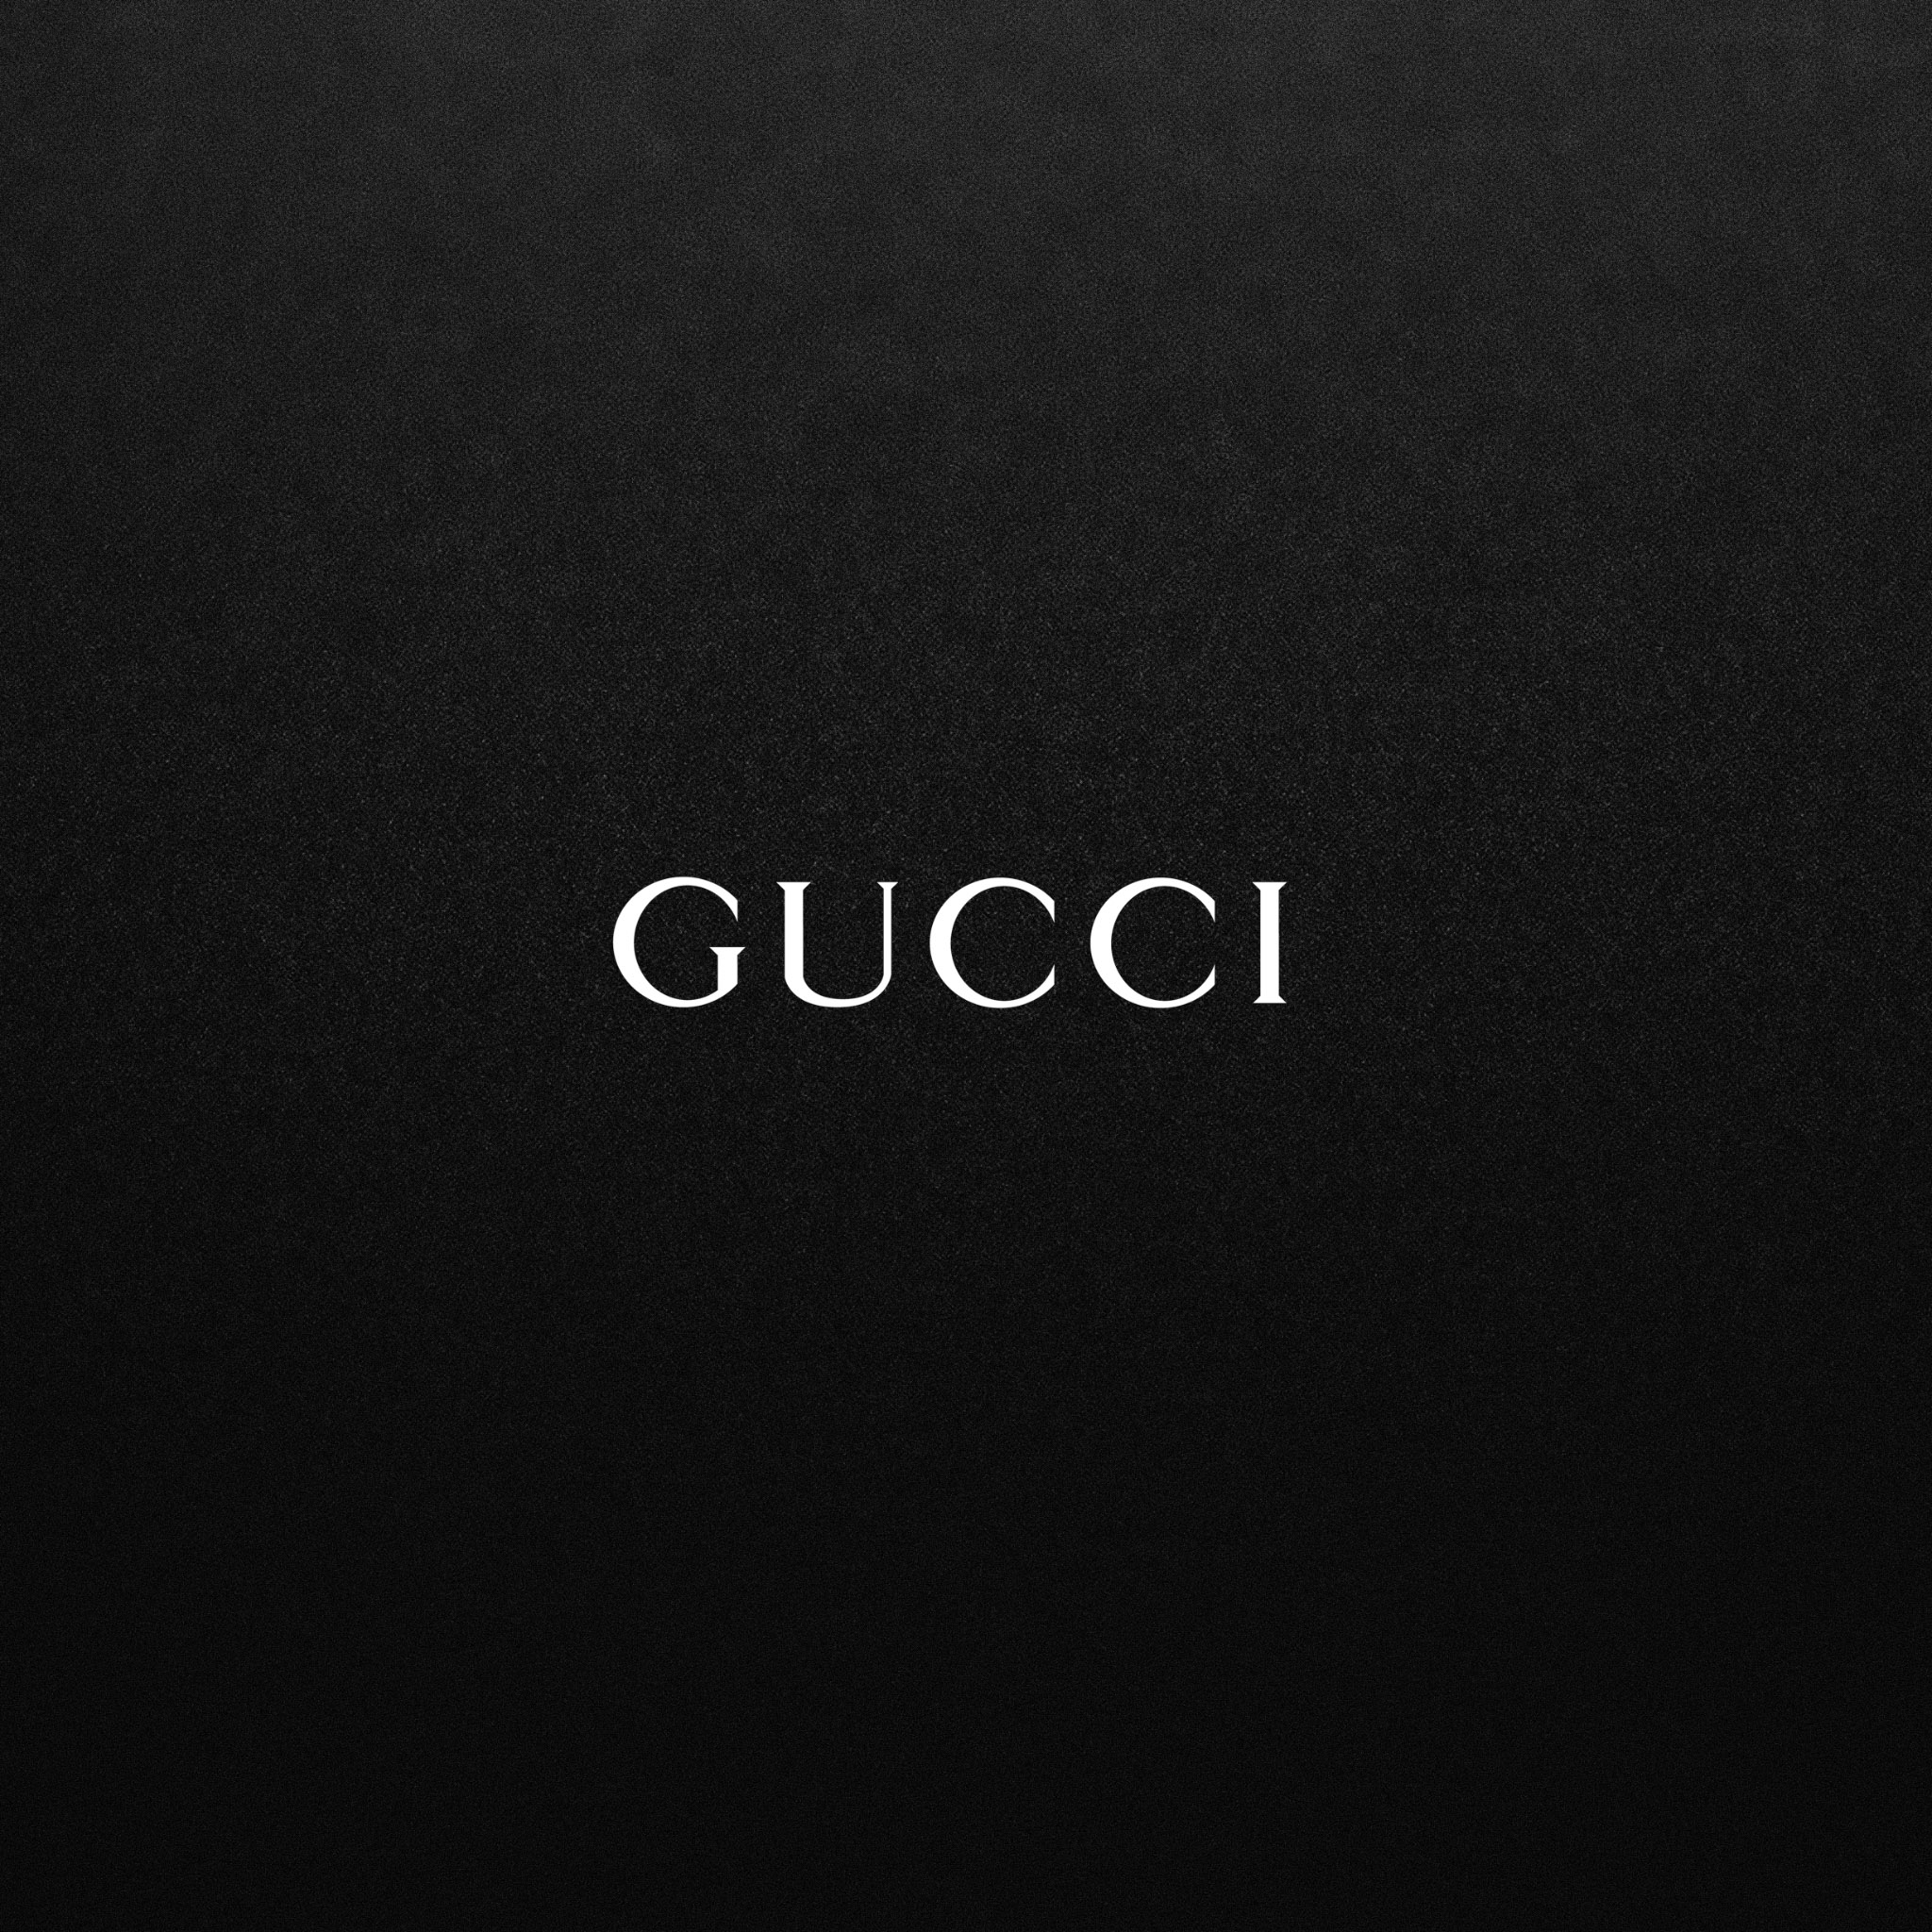 [50+] Gucci iPhone Wallpaper | WallpaperSafari